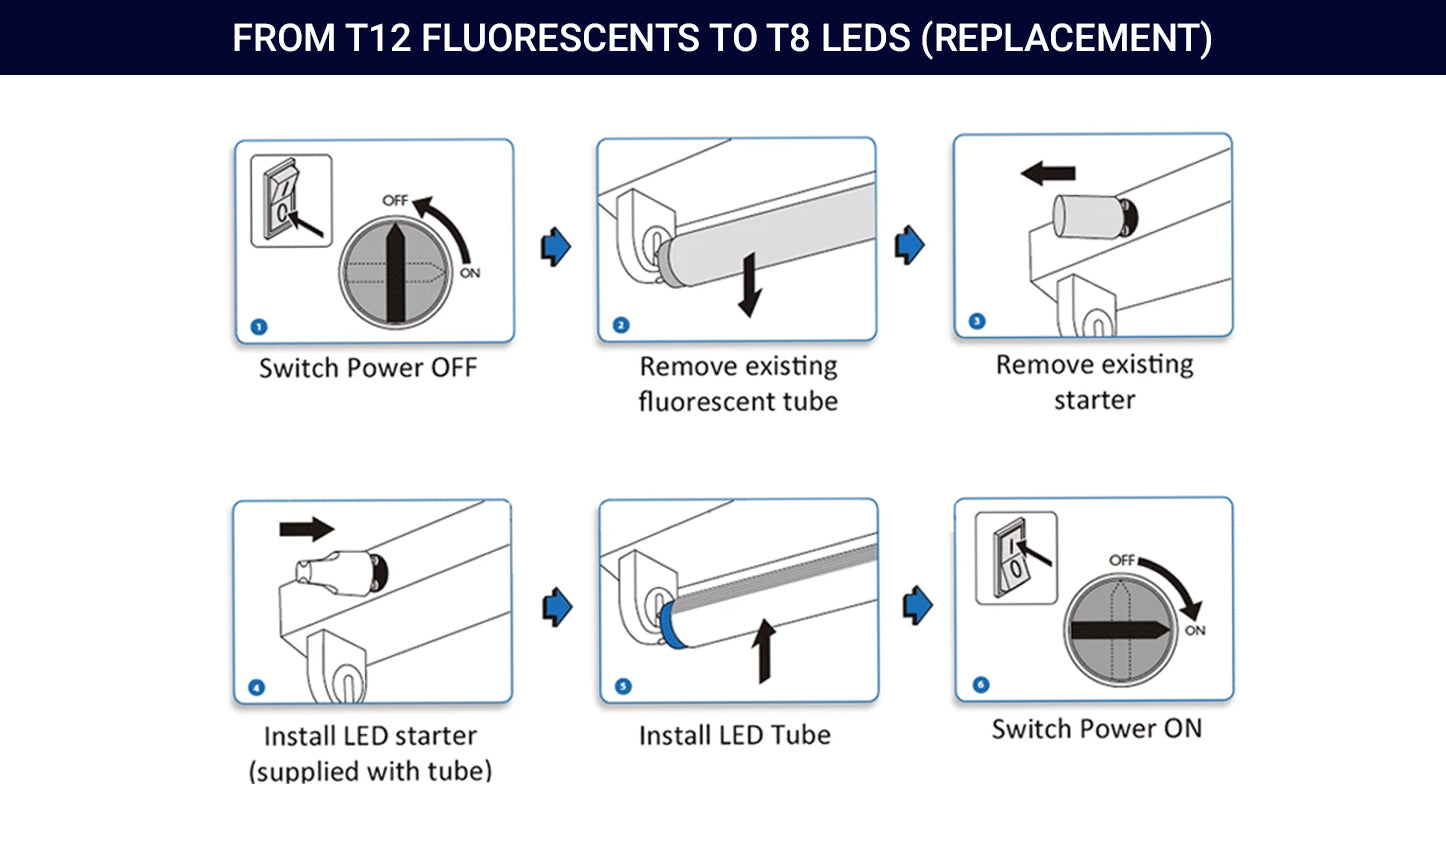 How a LED starter looks like 